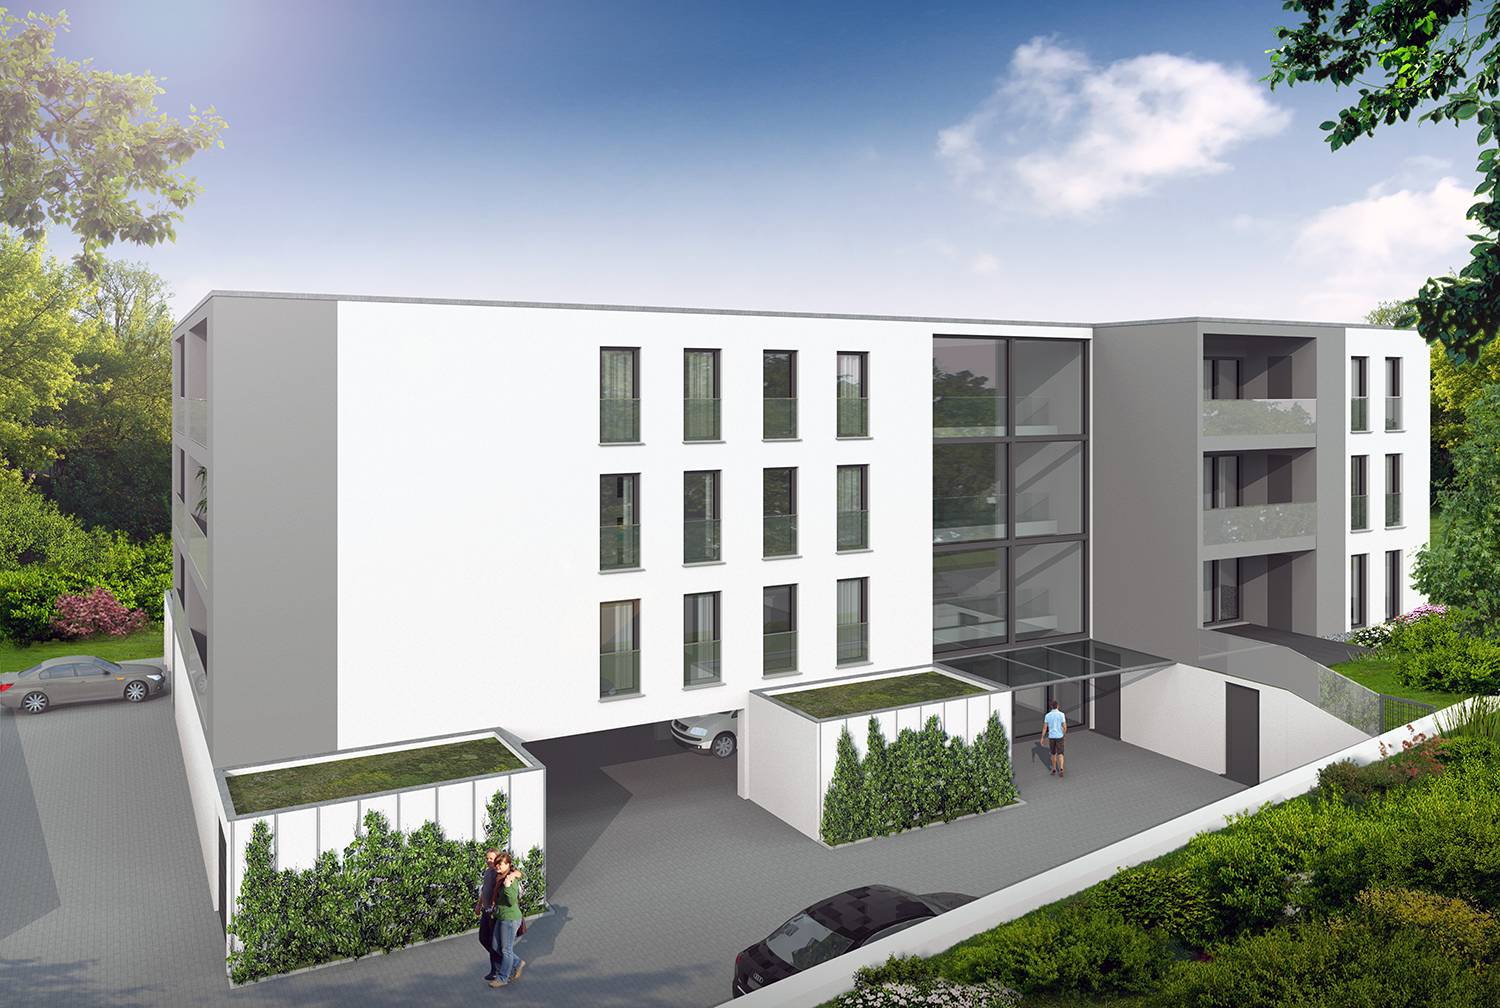 Architekturvisualisierungen eines Entwurfes der Balkonen- und Eingangsfassade eines Mehrfamilienhauses in Fleurystraße, 92224 Amberg visualisiert für die Firma Wohnraum GmbH aus 92224 Amberg (Jahr 2022)